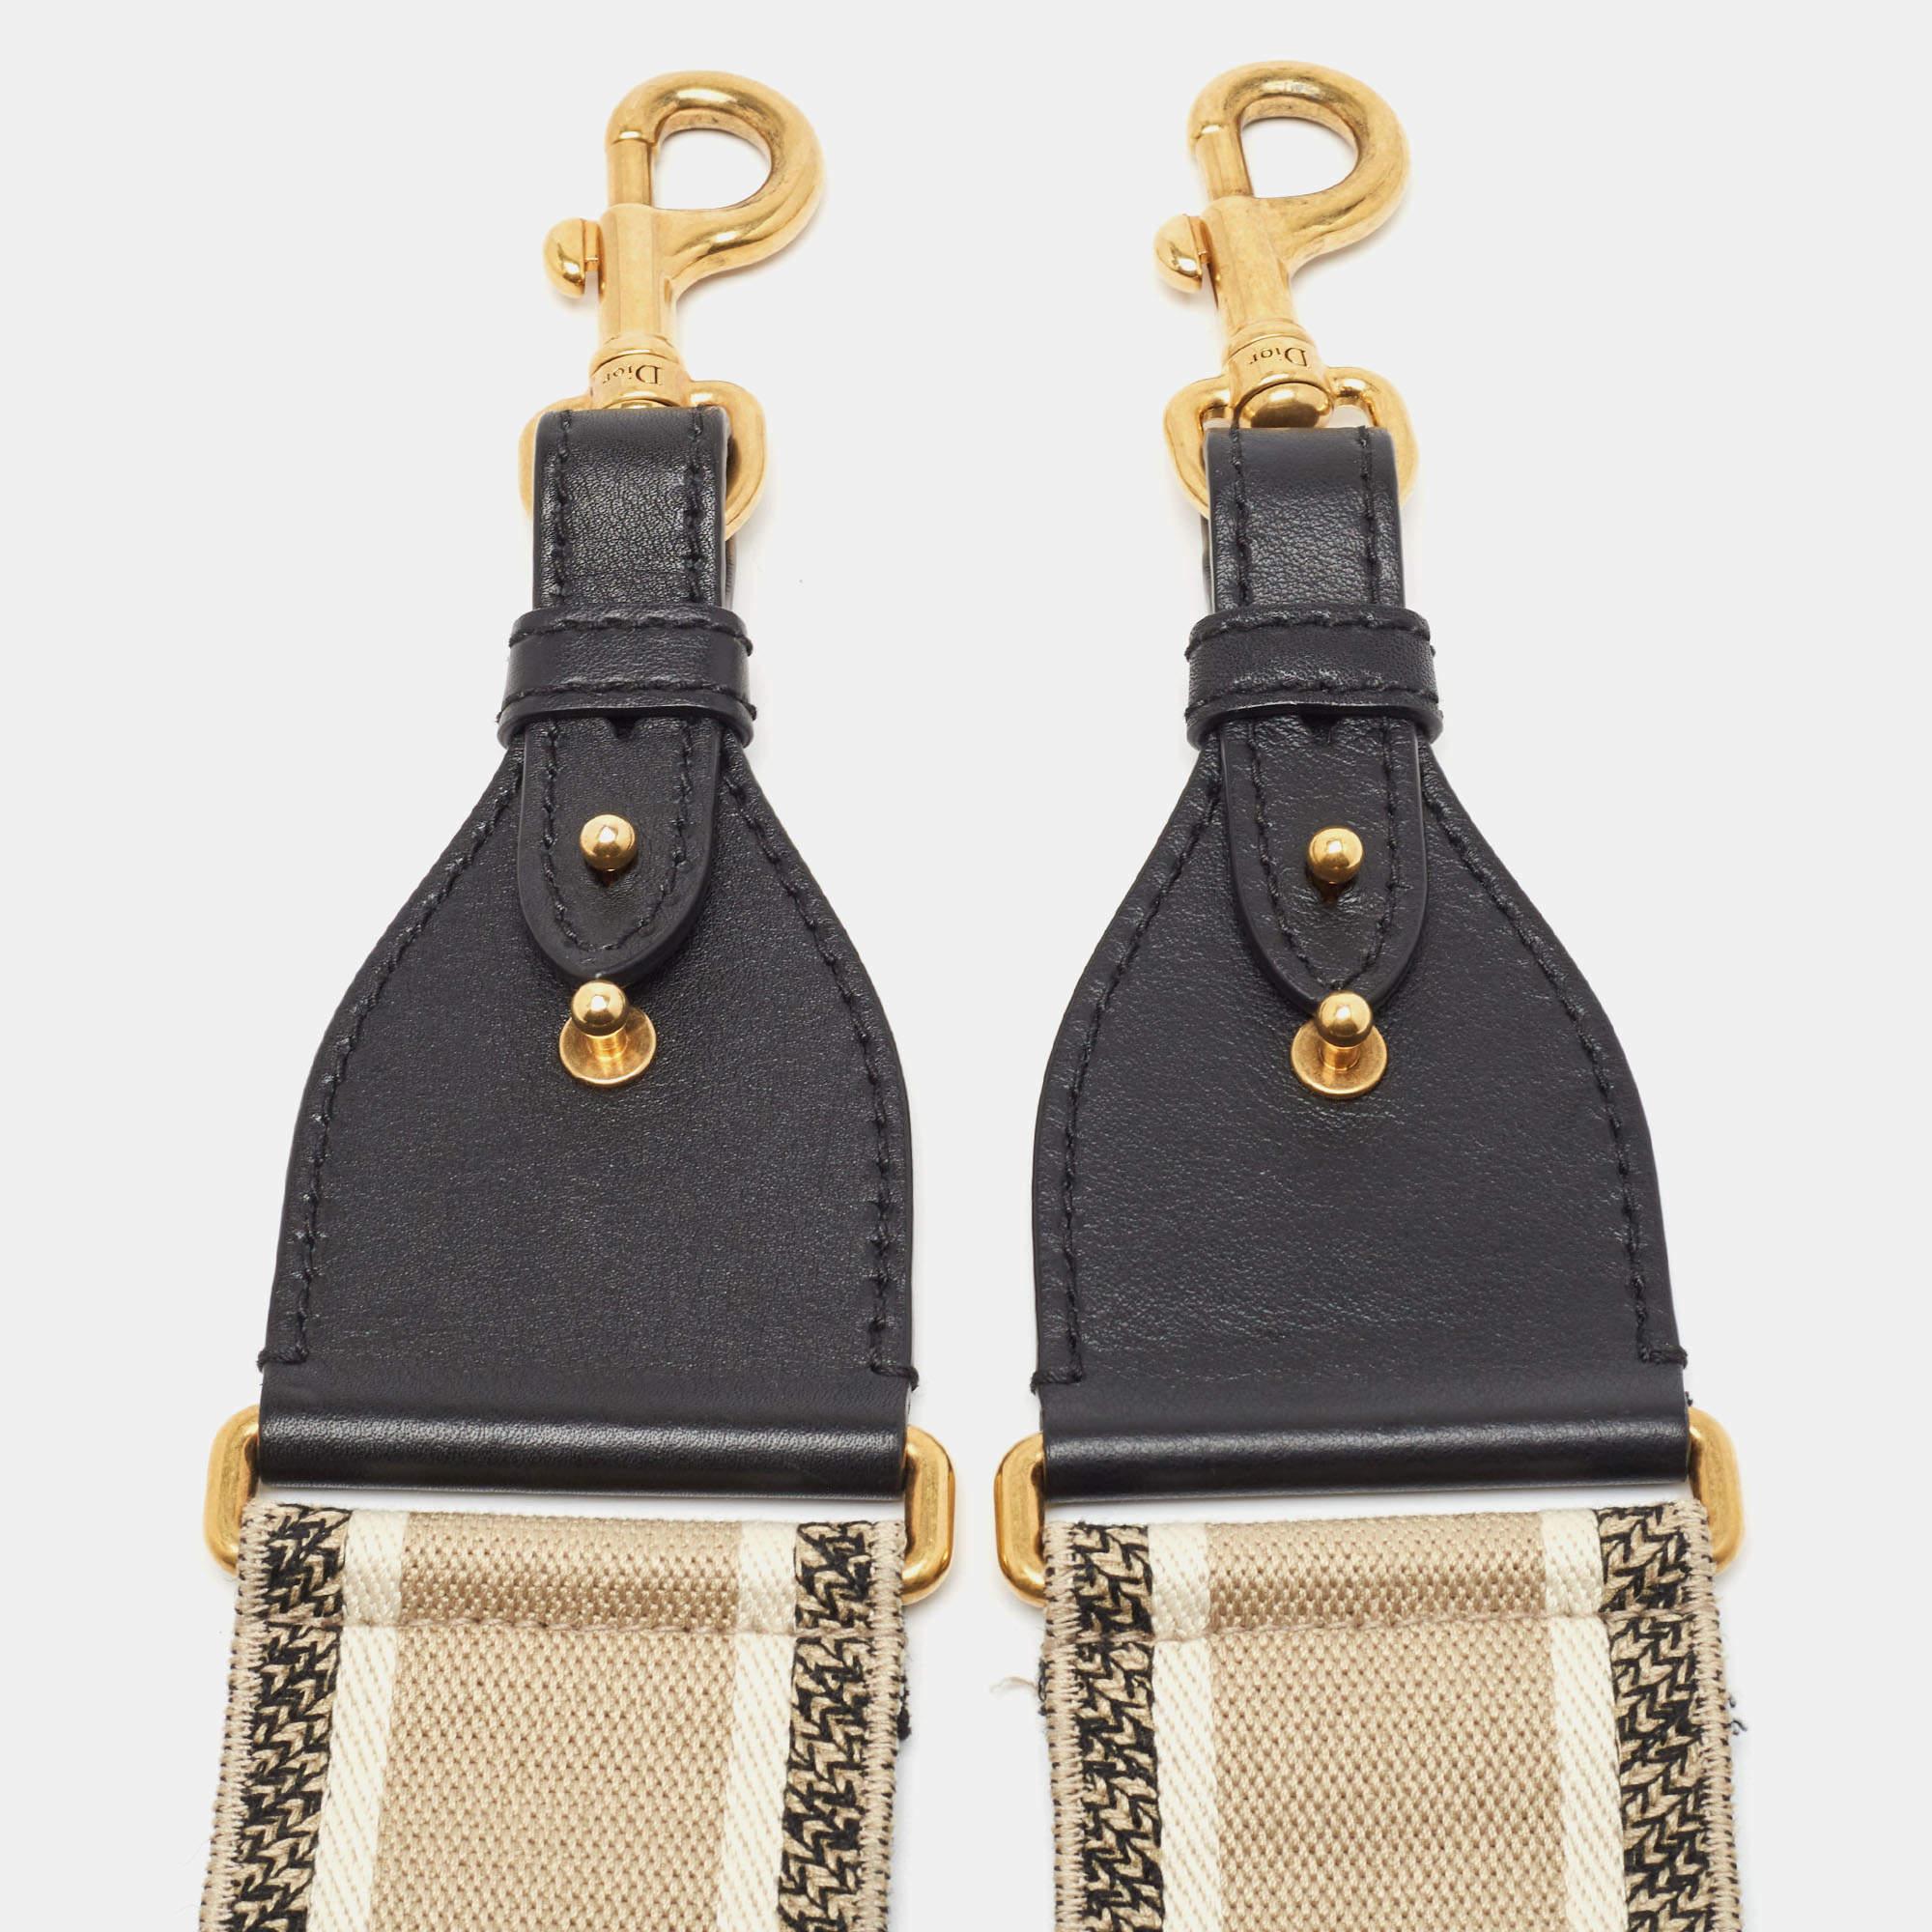 Dior bringt Ihnen diesen superschicken Schulterriemen, den Sie mit Ihrer großen Handtaschensammlung zur Schau stellen können. Der Riemen ist aus besticktem Segeltuch und Lederbesätzen gefertigt. Er ist mit zwei Metallverschlüssen versehen, mit denen